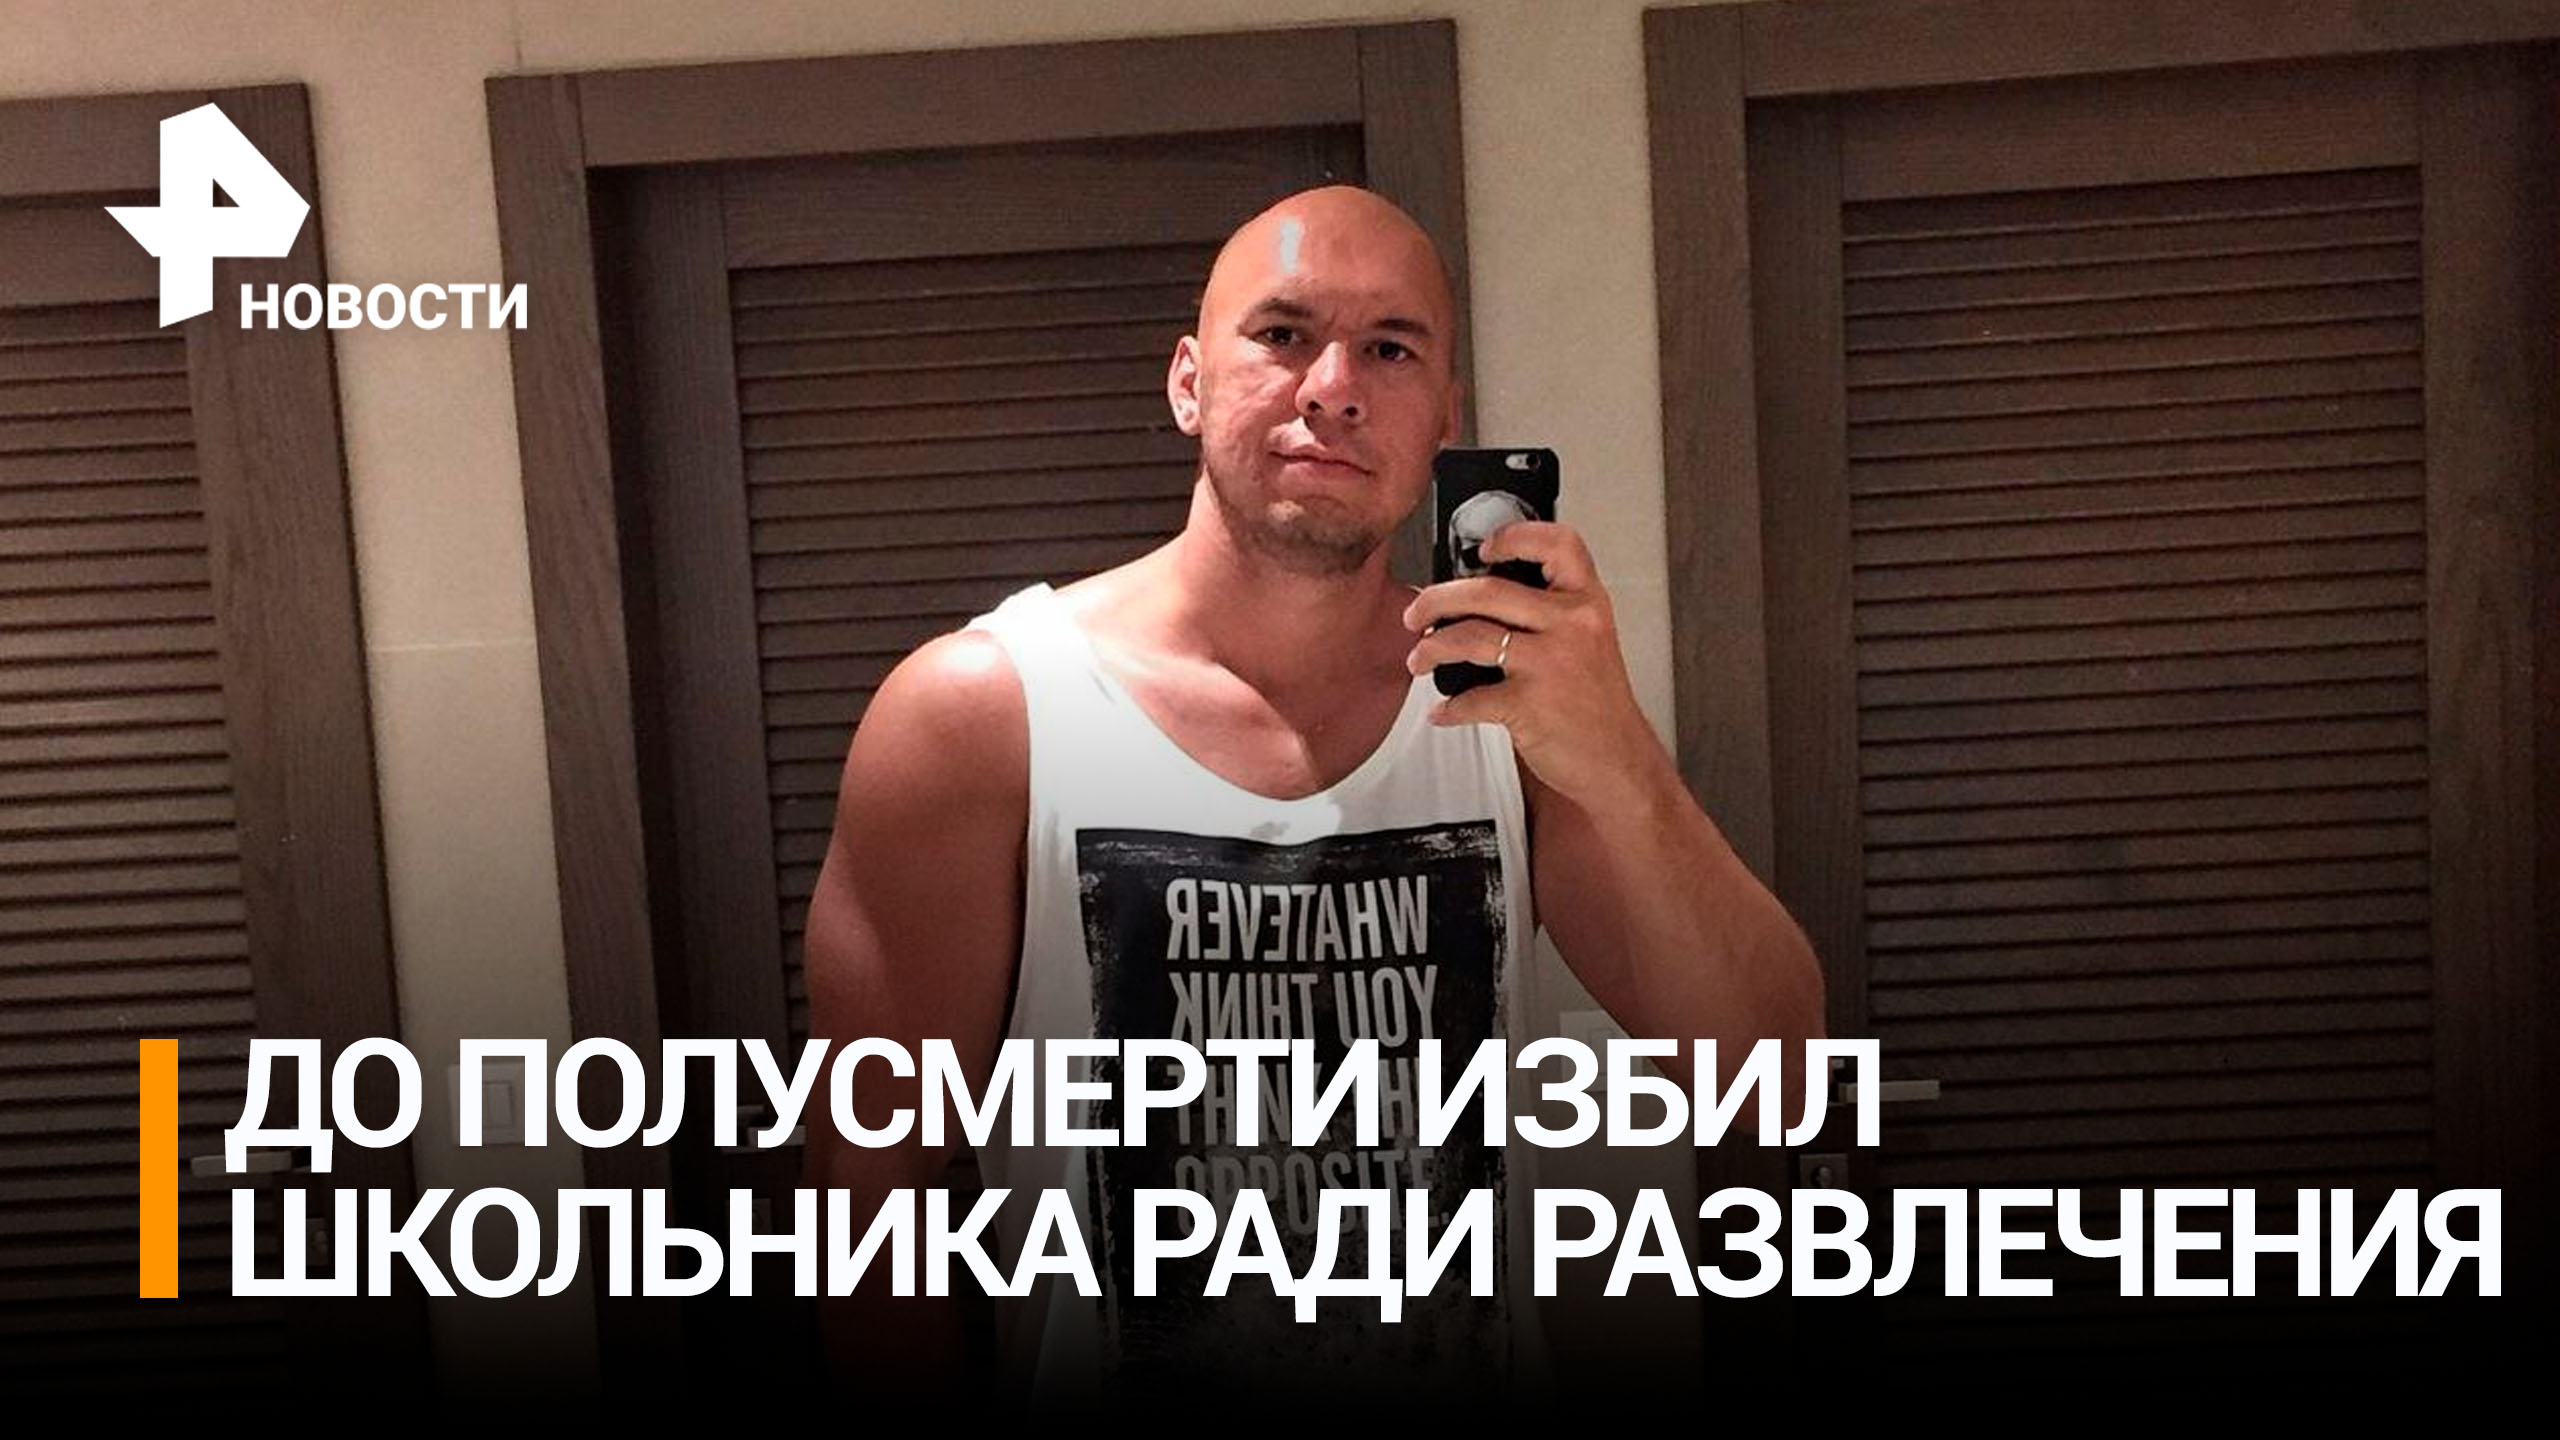 37-летний мужчина до полусмерти избил школьника в Москве ради развлечения / РЕН Новости